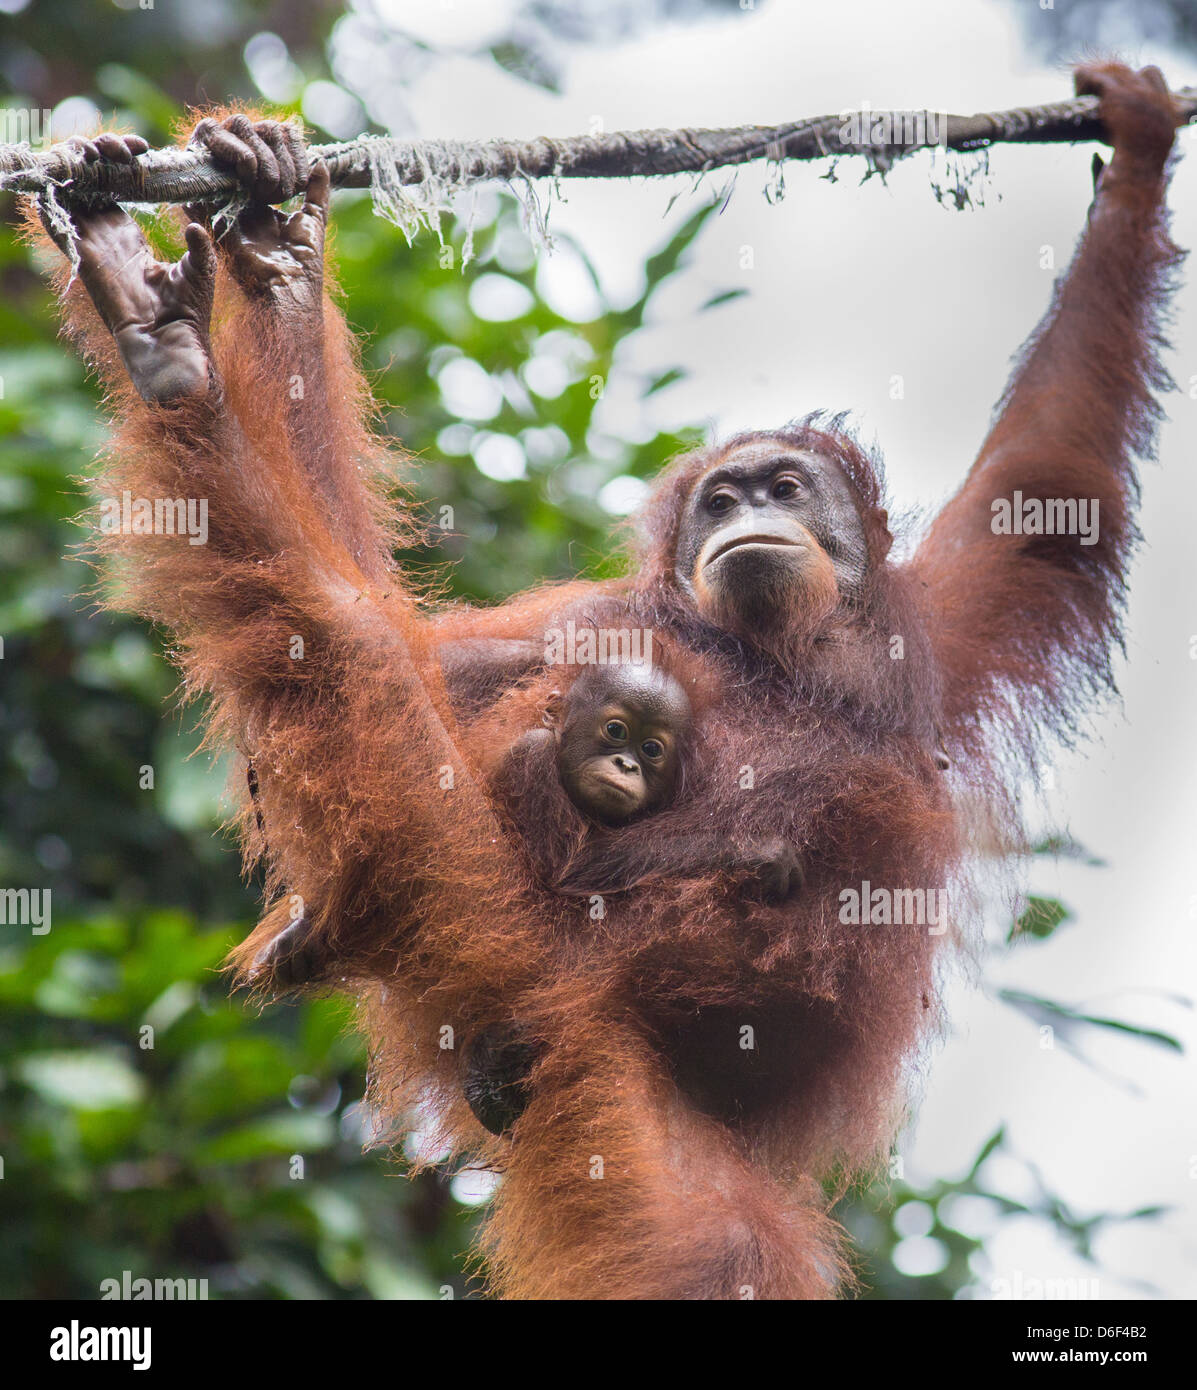 An Orangutan mother with her baby clinging to her hair at Sepilok Orangutan Rehabilitation Centre in Sabah Borneo Stock Photo